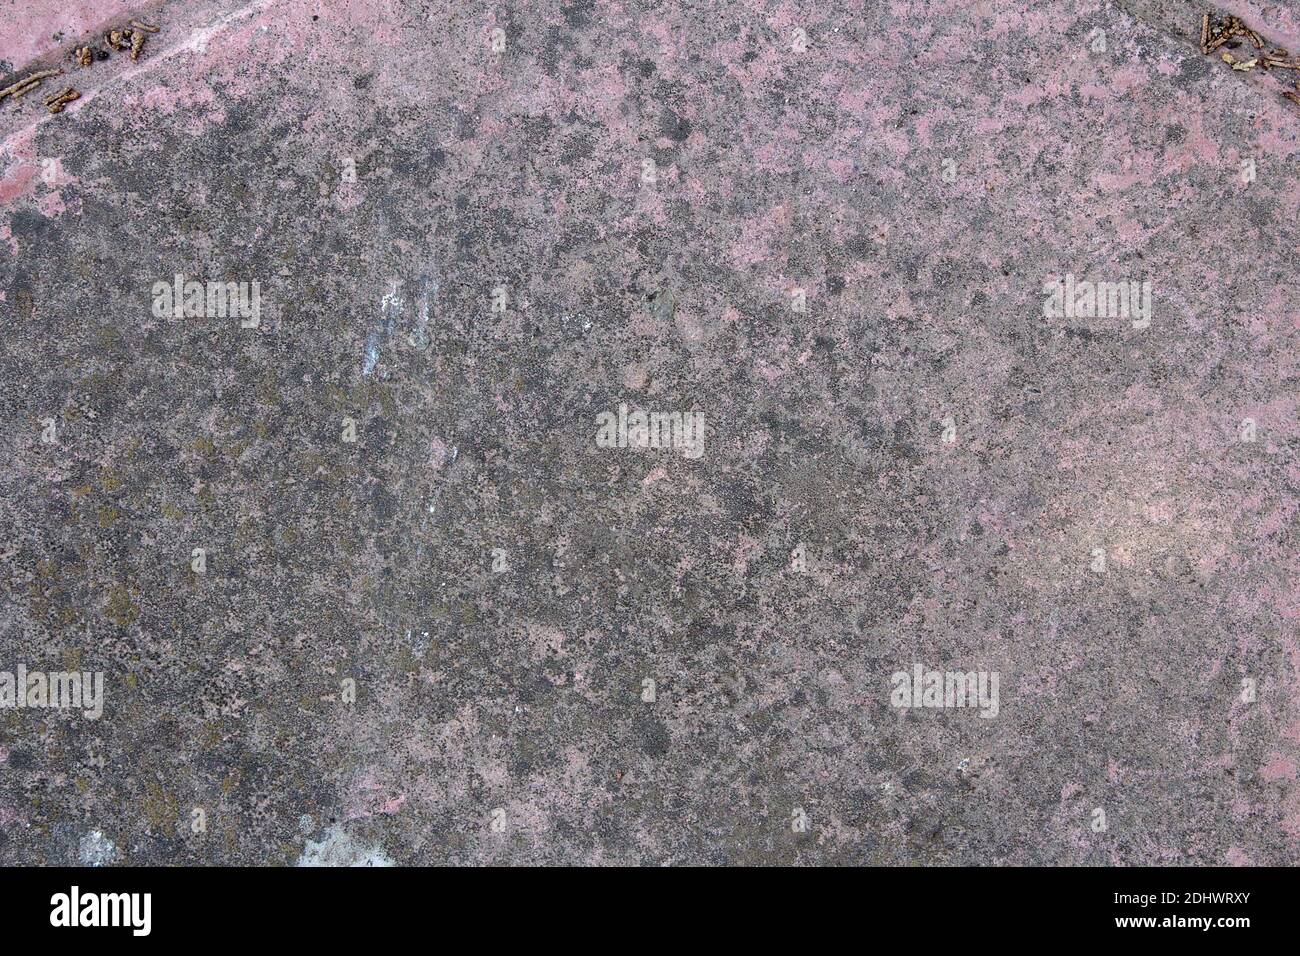 Pavimento in pietra rosa con macchie grigie umide, spruzzi di vernice bianca e tracce di semi in fessure diagonali. Sfondo ruvido. Foto Stock